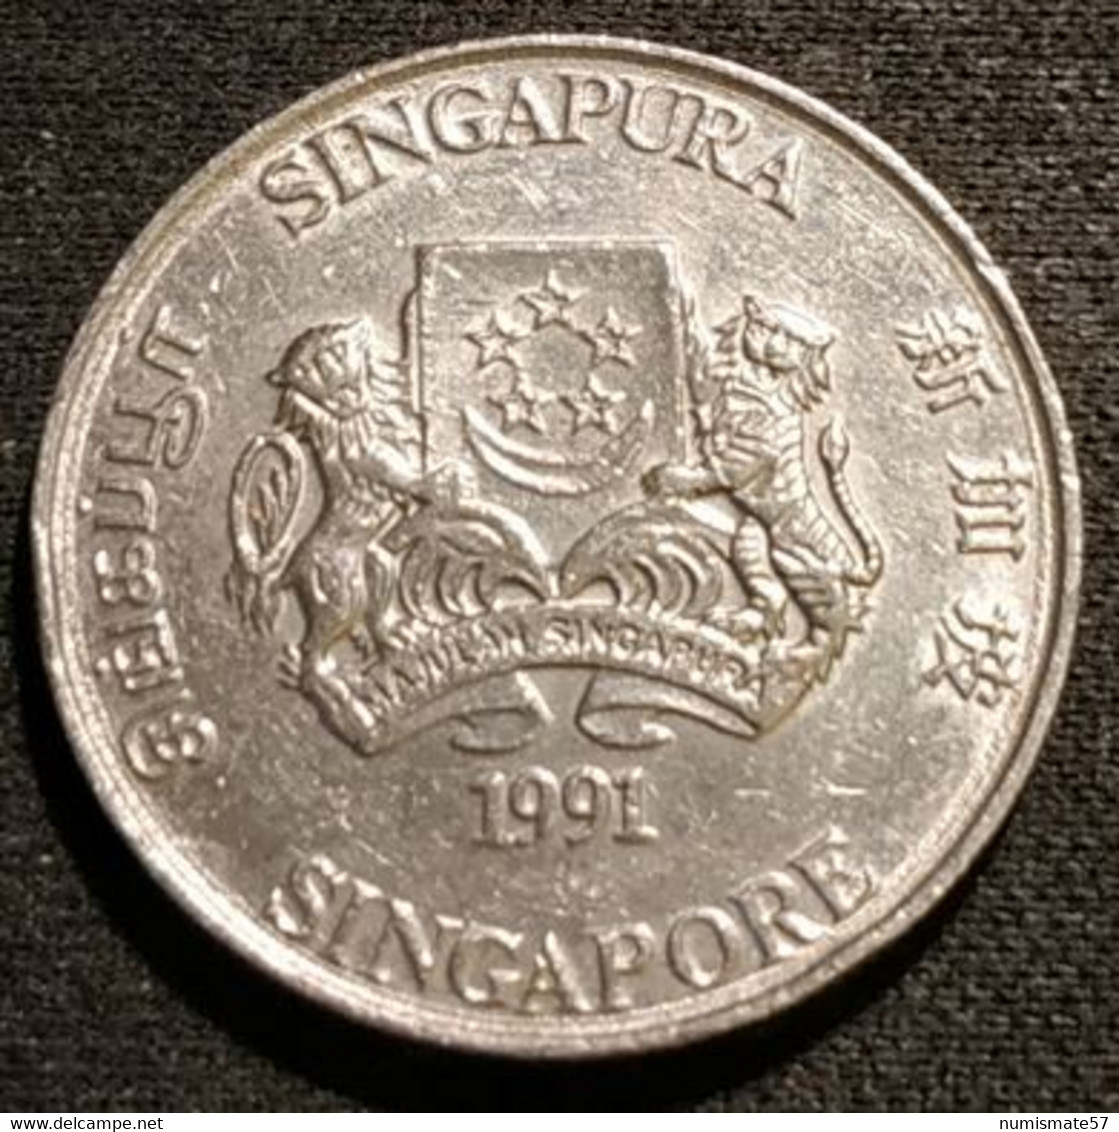 SINGAPOUR - SINGAPORE - 20 CENTS 1991 - KM 52 - ( Blason Haut ) - Singapour